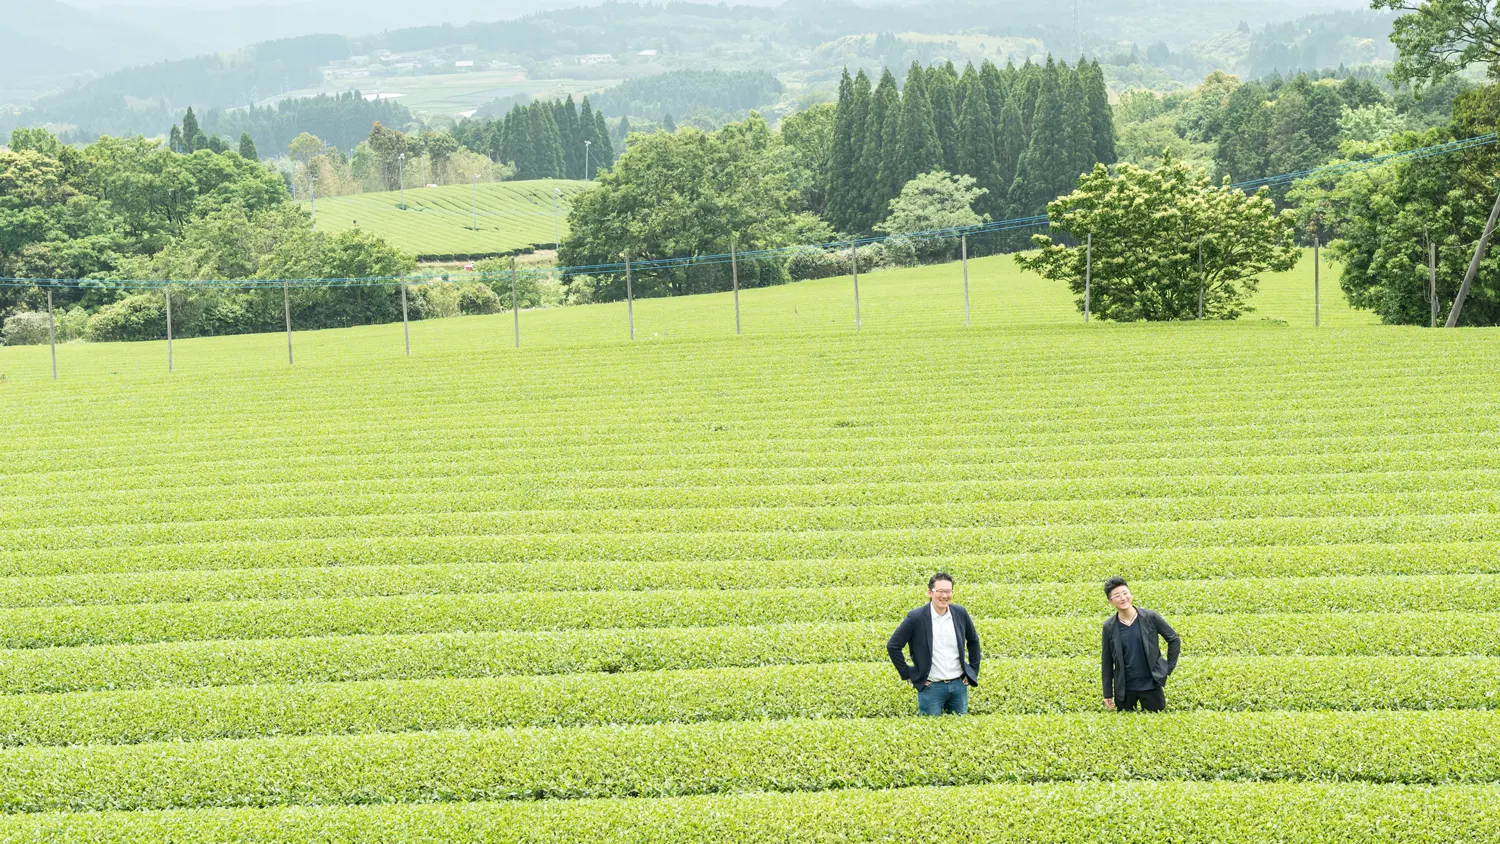 鹿児島県霧島にある茶畑。高い木々に囲まれた茶畑は飛散農薬の心配のありません。